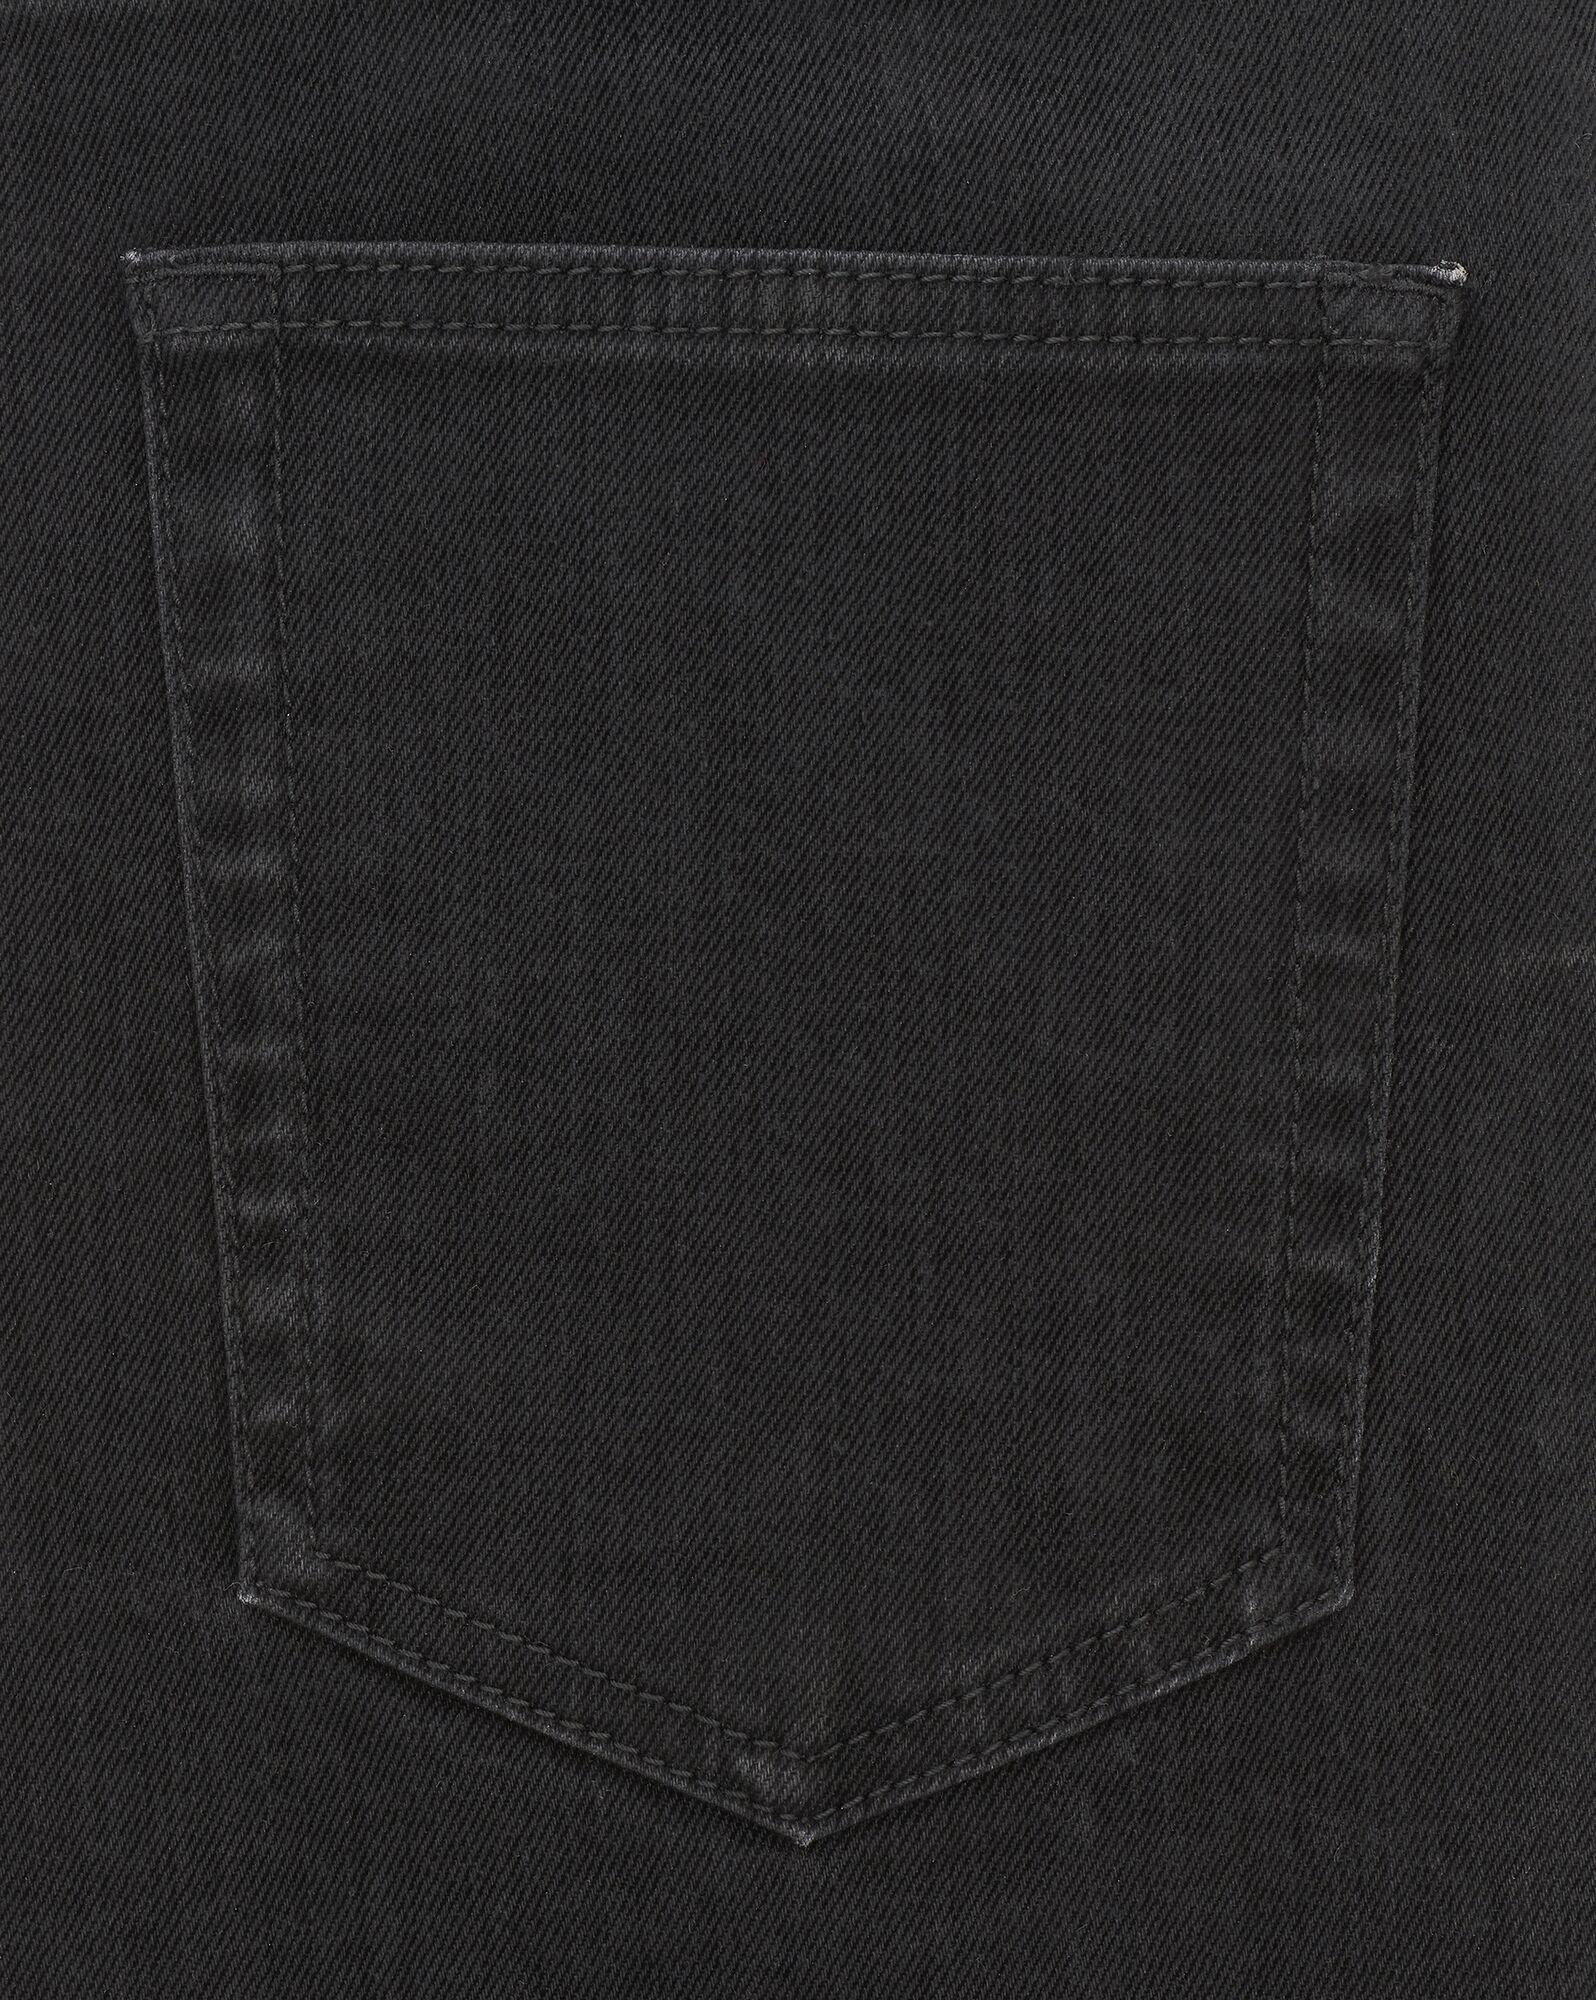 skinny jeans in light glazed black denim - 4